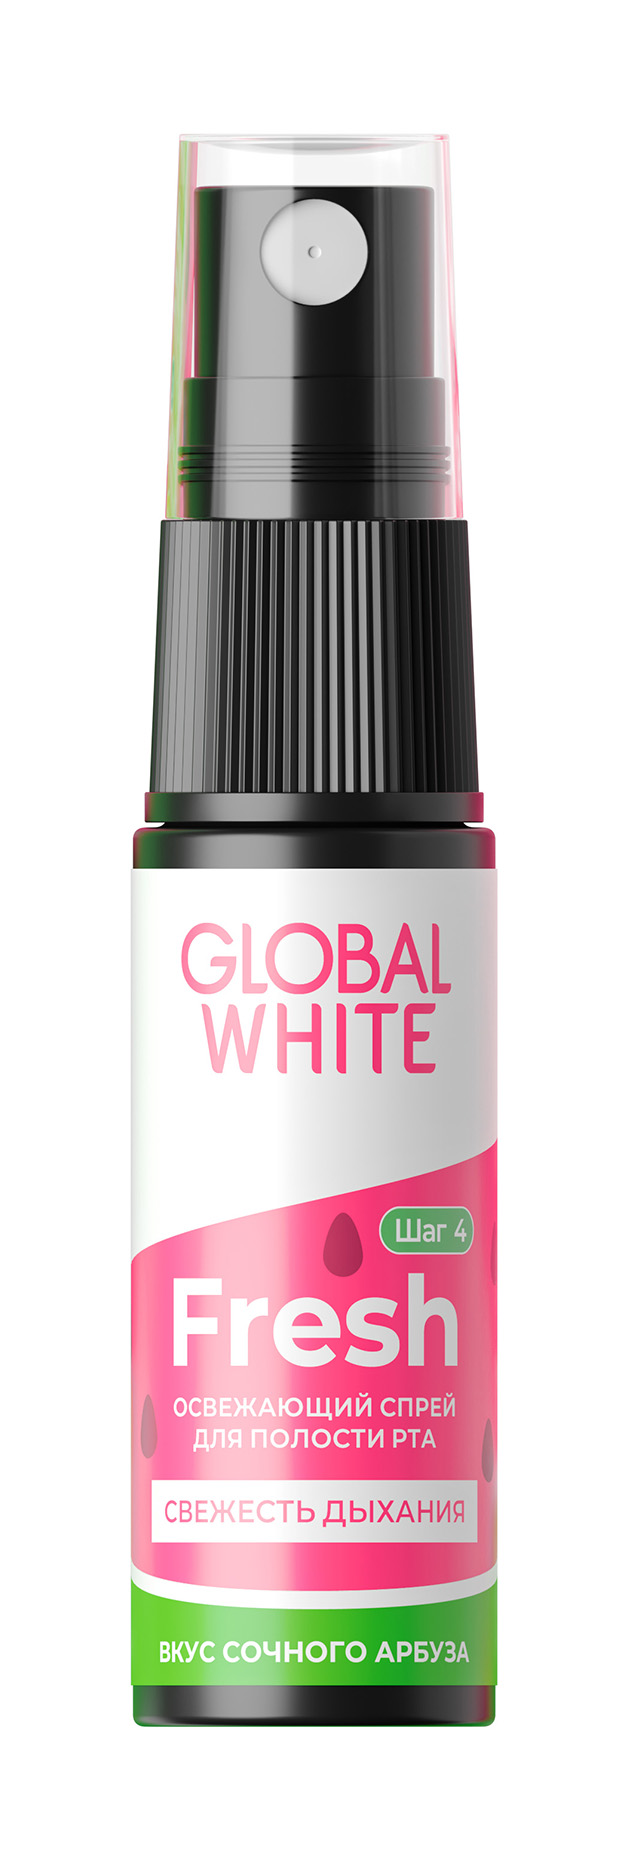 фото Спрей для полости рта global white fresh освежающий, со вкусом арбуза, 15 мл